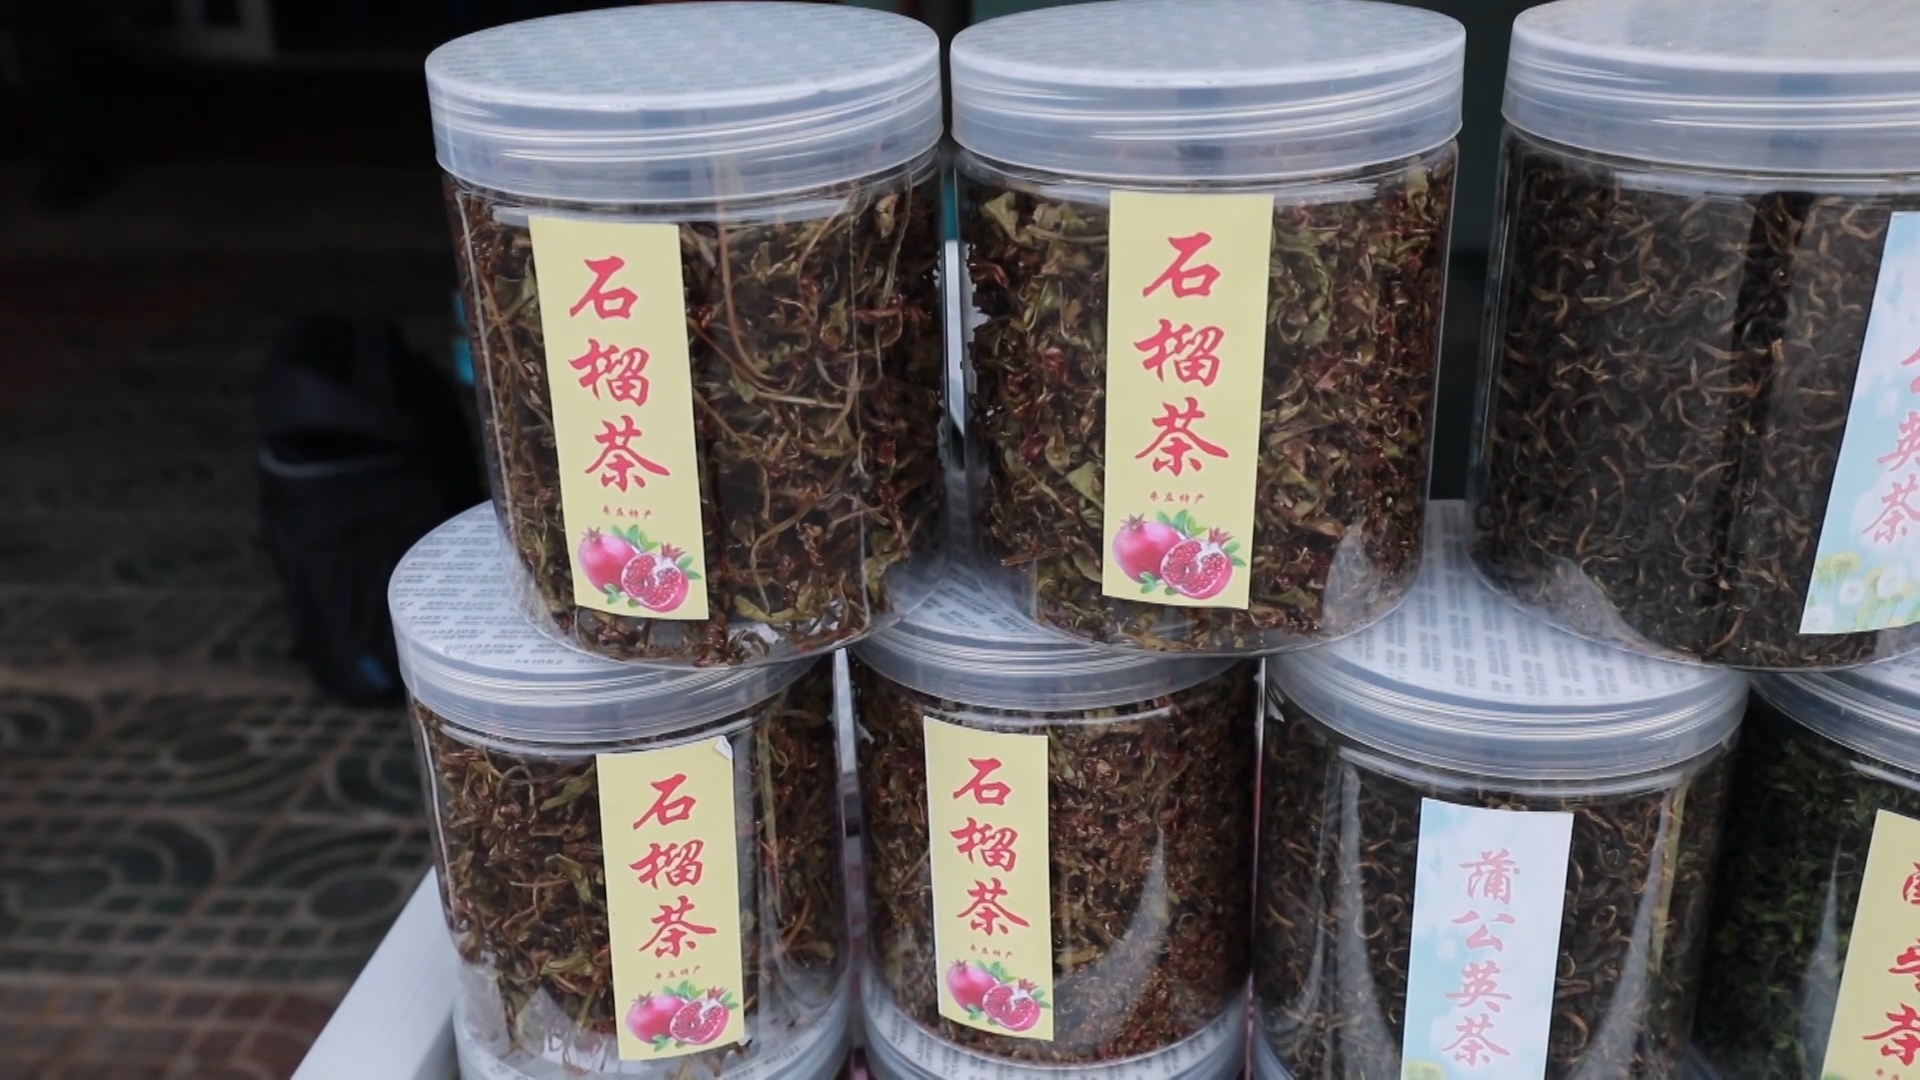 枣庄峄城石榴茶成助农增收新亮点